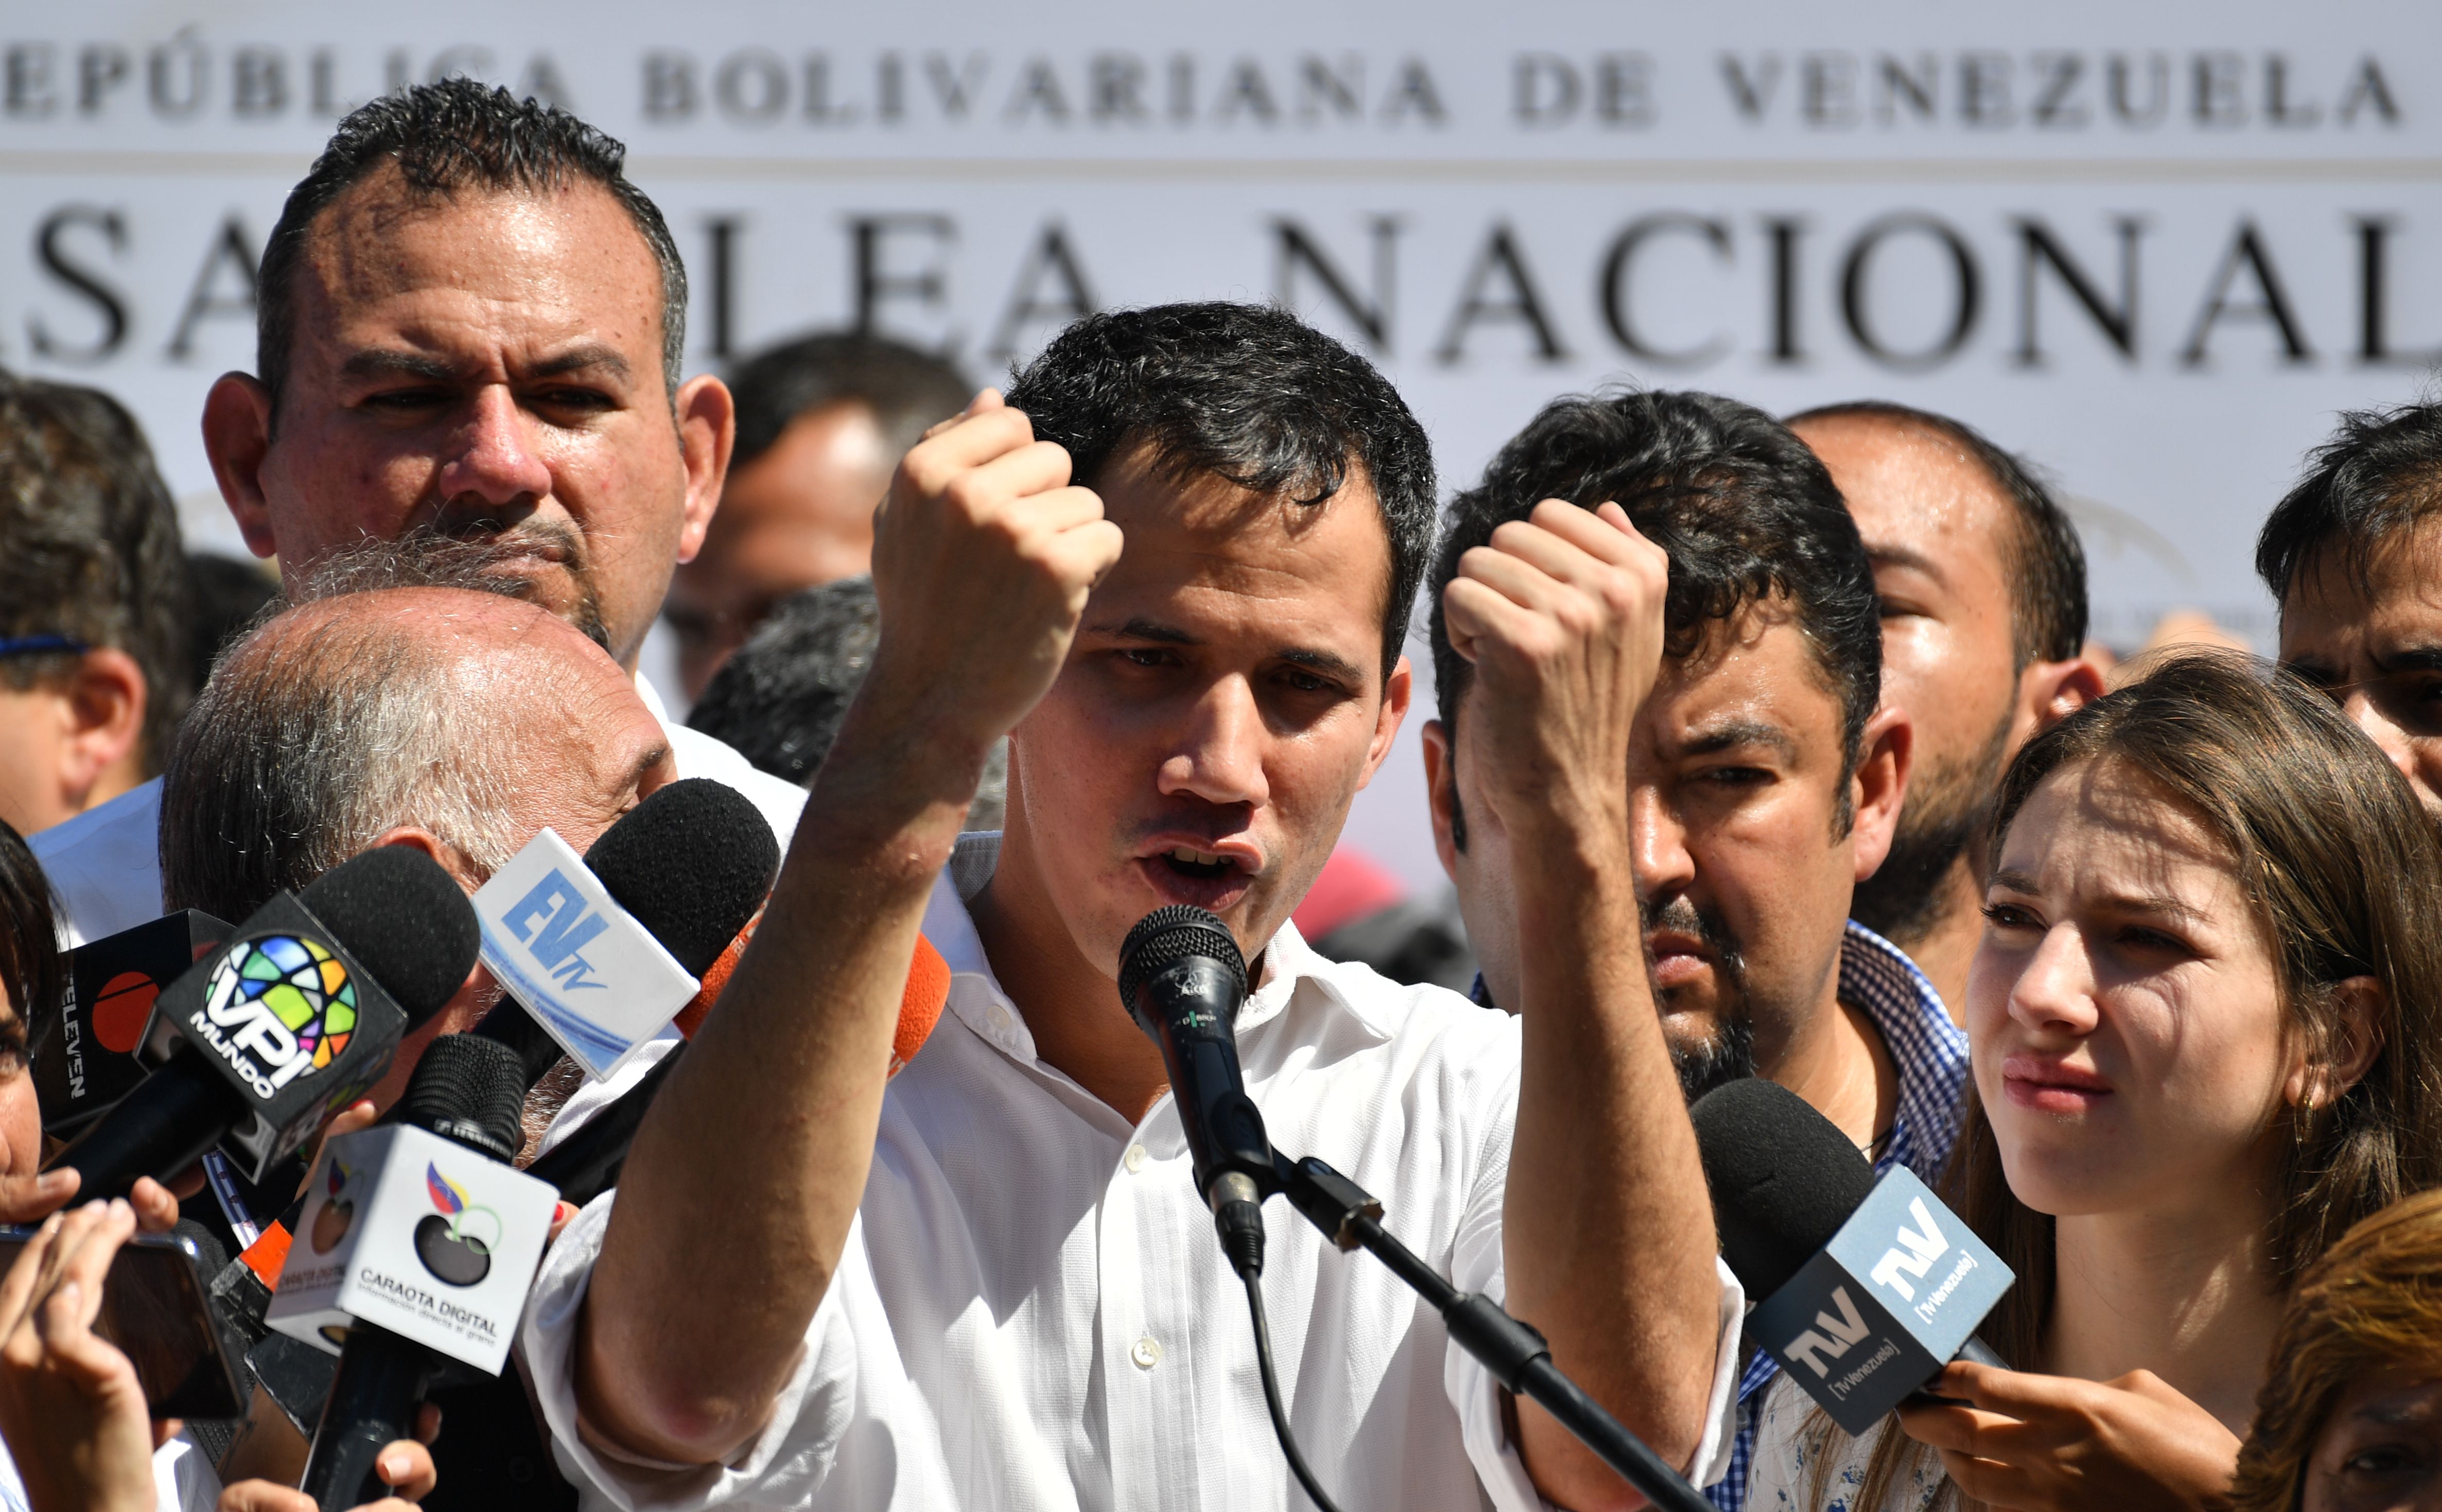 El presidente de la Asamblea Nacional de Venezuela, Juan Guaidó, hace un gesto mientras habla ante una multitud de partidarios de la oposición durante una reunión abierta en Vargas, Venezuela. (Foto Prensa Libre: AFP).

